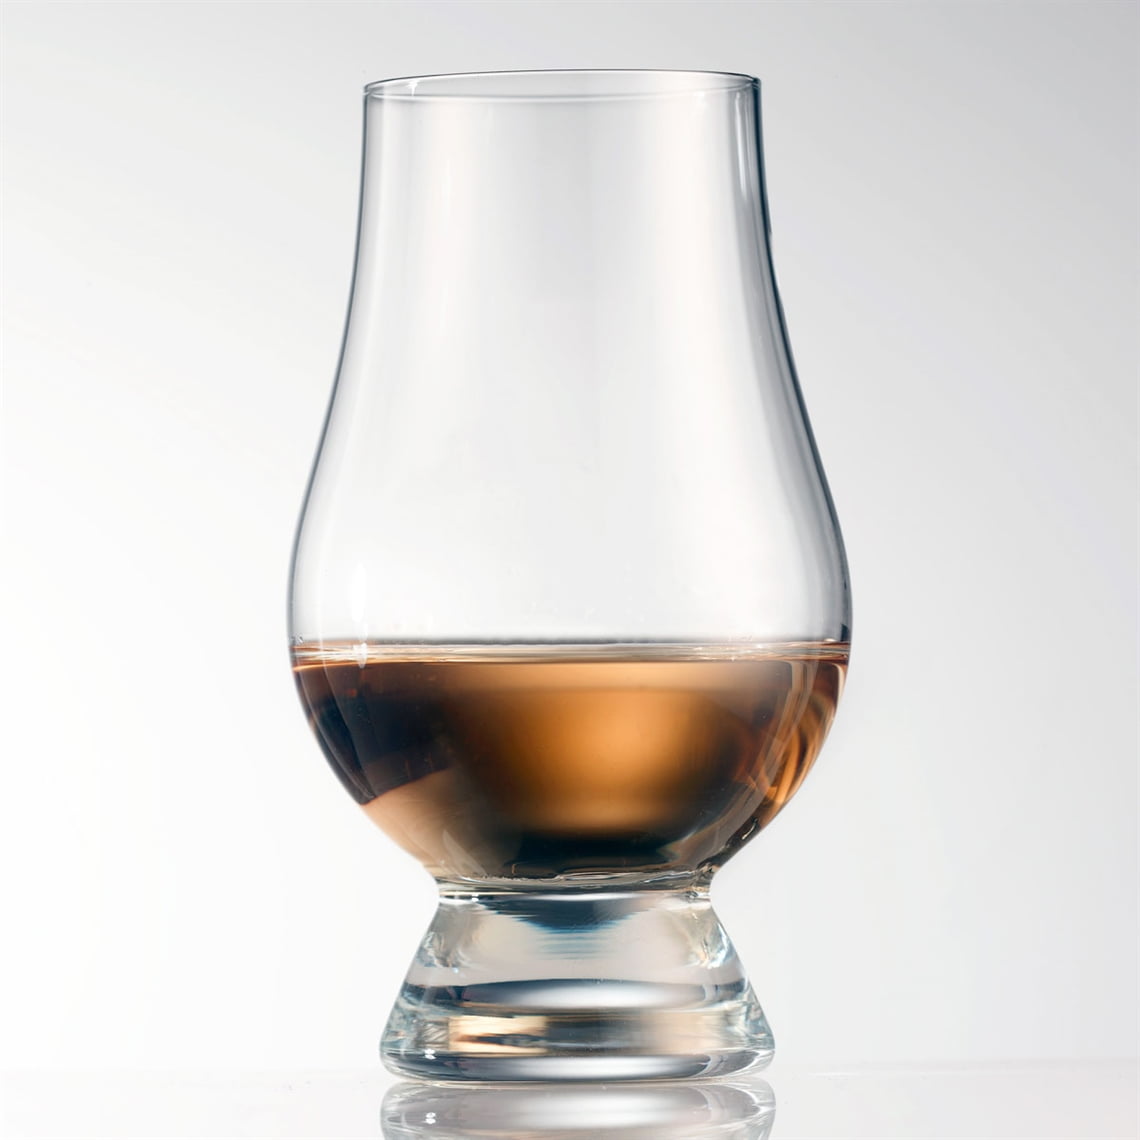 Glencairn Whisky Glass Set of 4 in 4 Pack Gift Carton